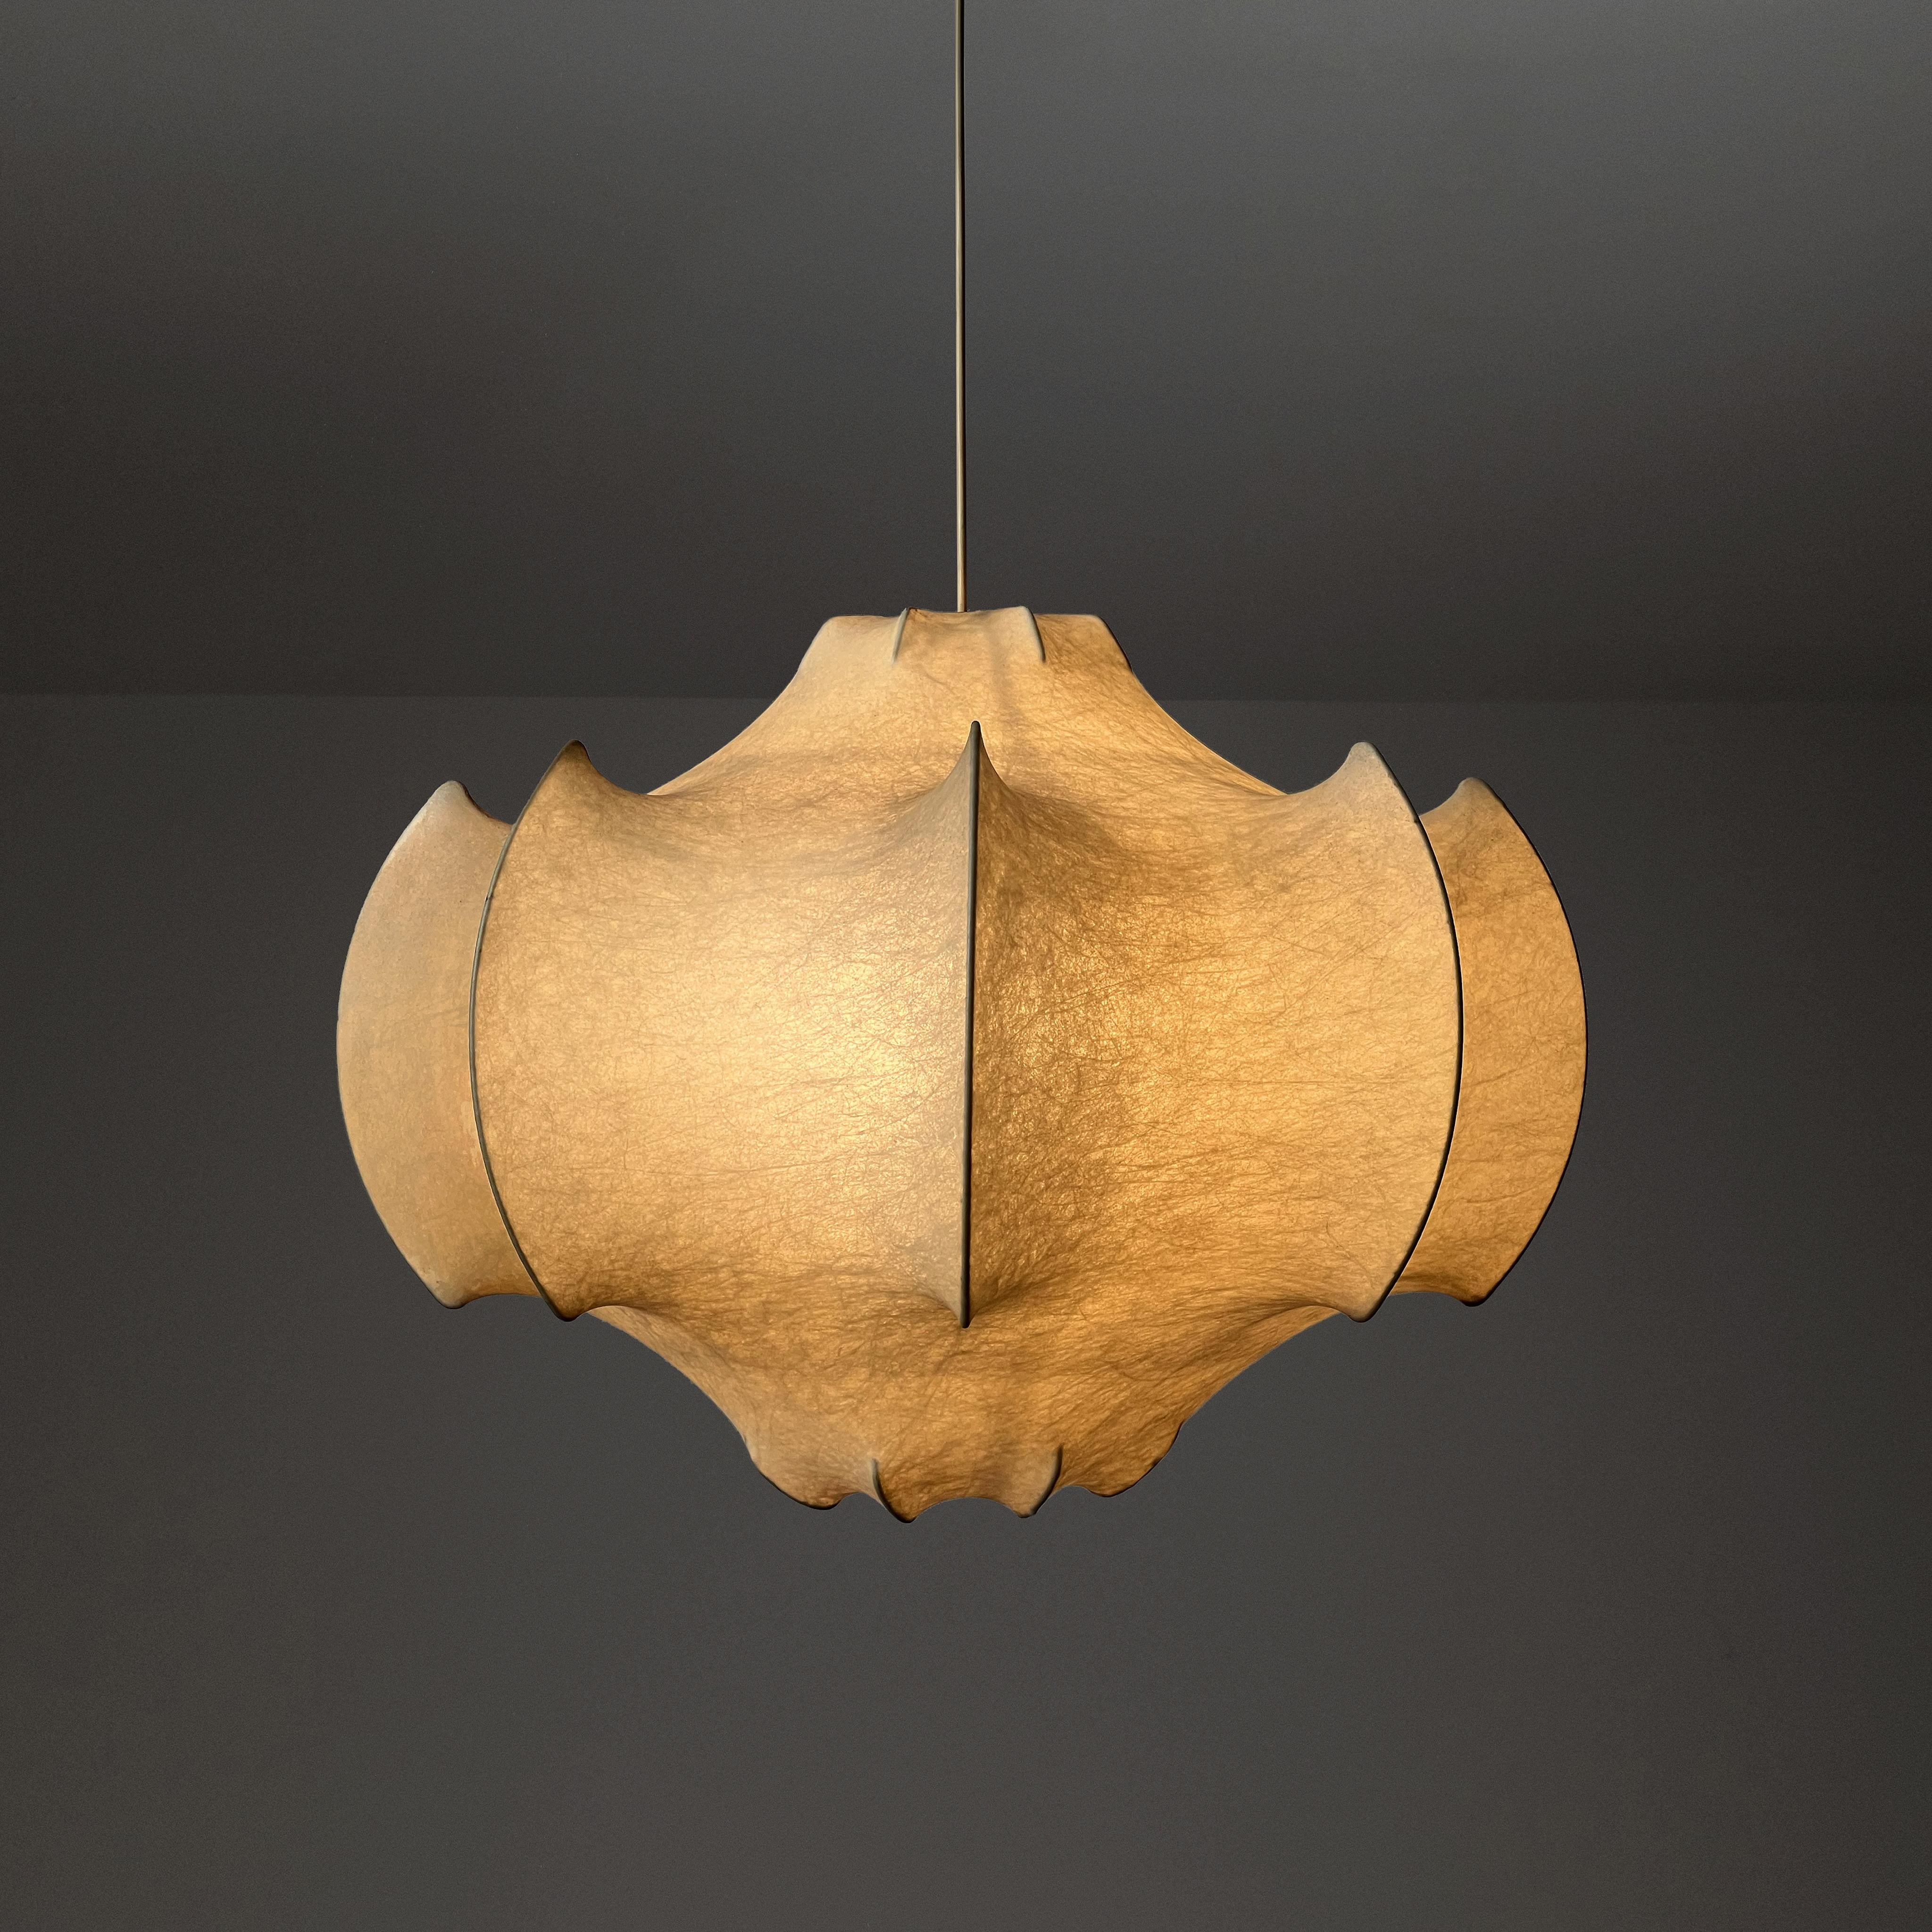 Mid-20th Century Viscontea Ceiling Lamp designed by Achille & P.Giacomo Castiglioni for Flos. Ita